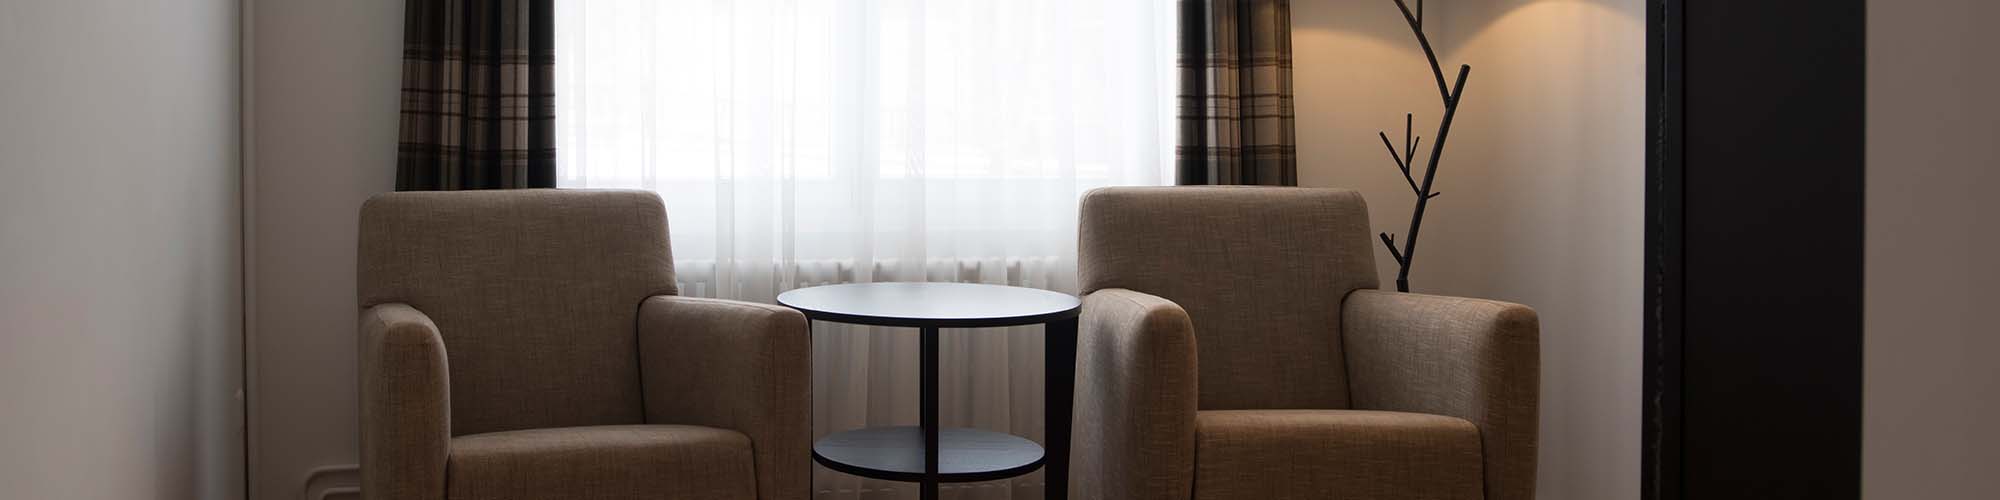 Hotel Davos - Camera spaziosa - con dormitorio ed area abitativa separati